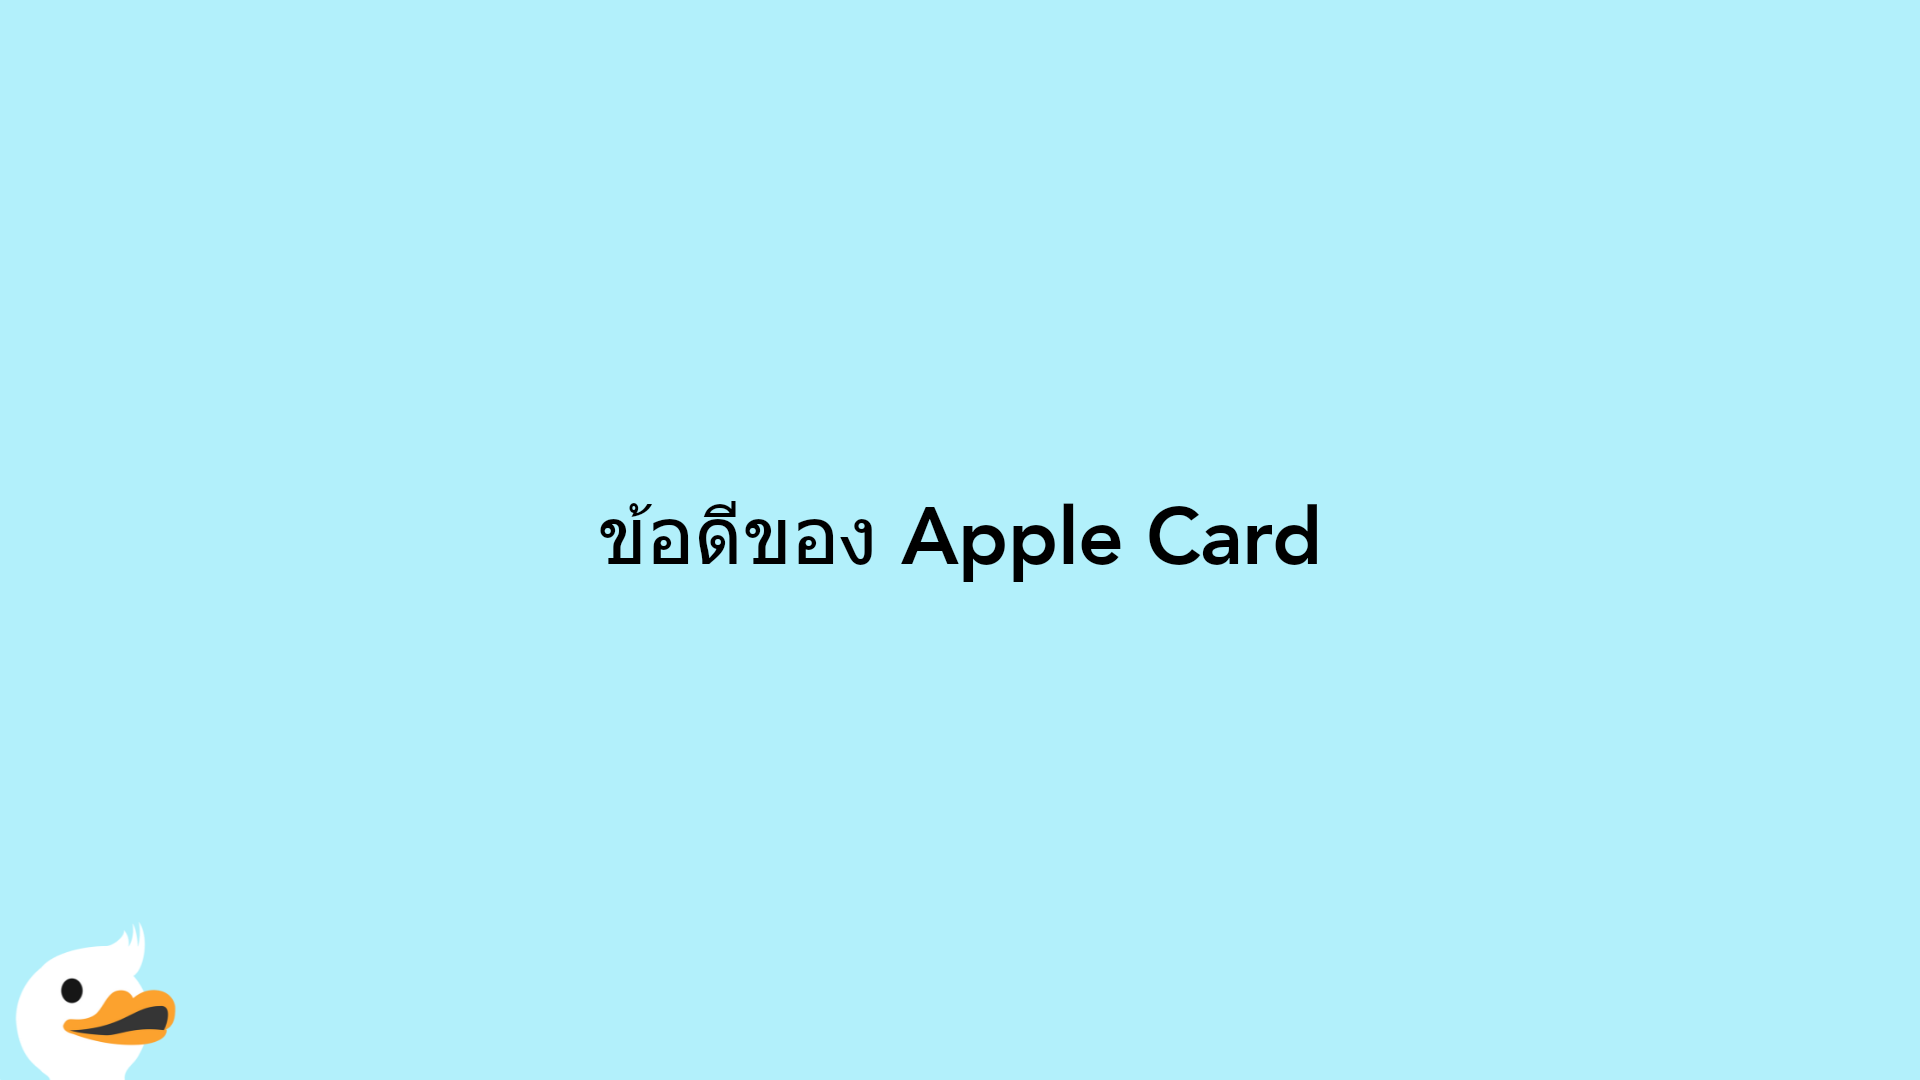 ข้อดีของ Apple Card